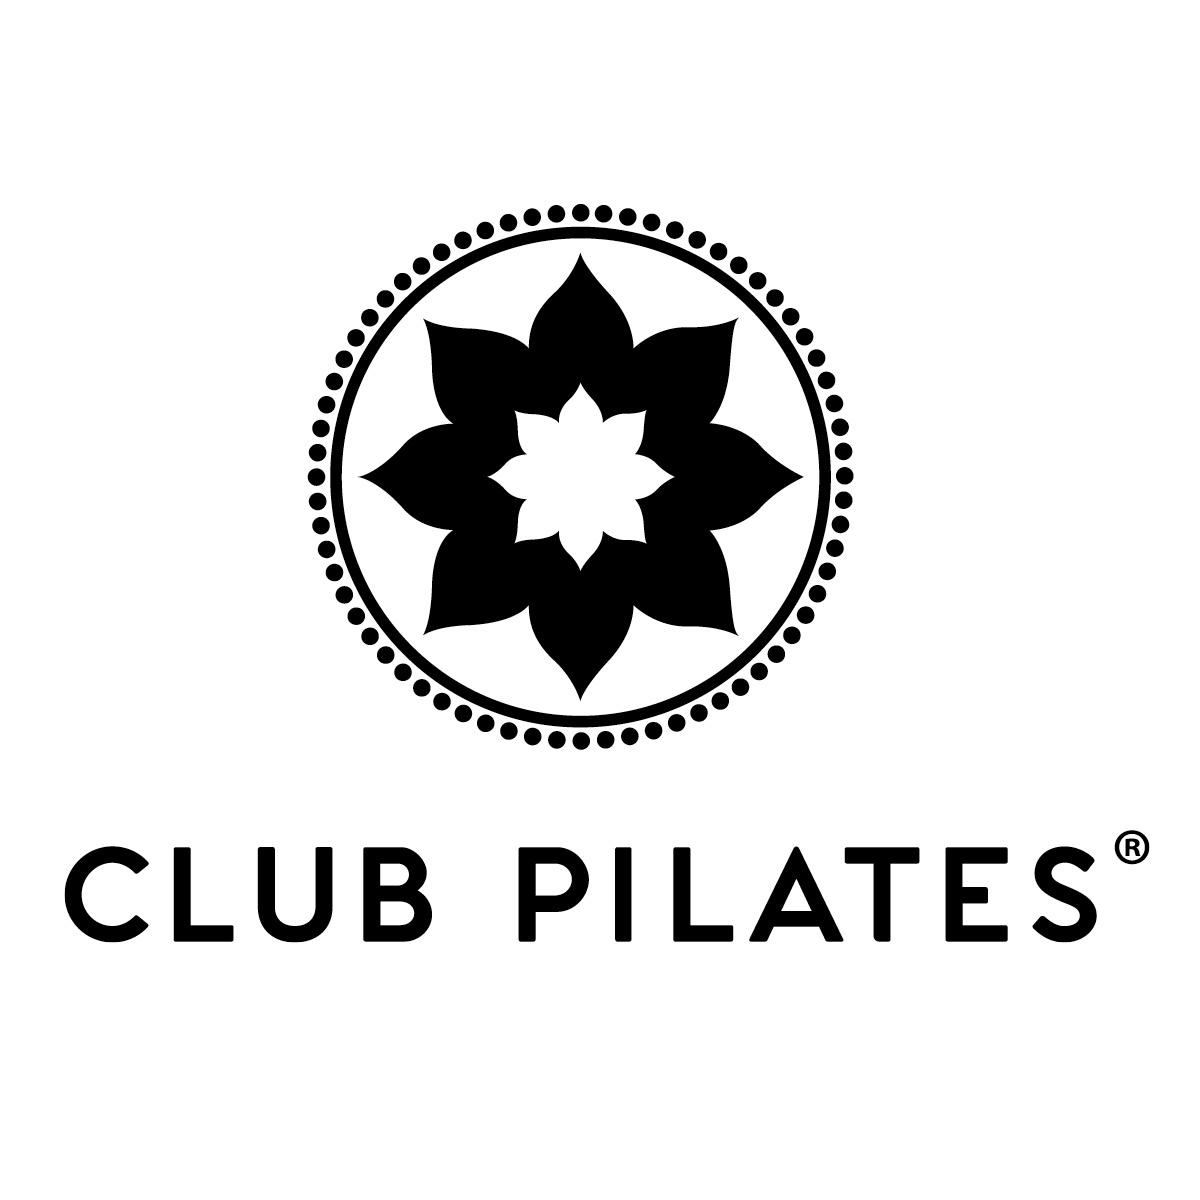 Club Pilates 1105-D N Bethlehem Pike, Spring House Pennsylvania 19477